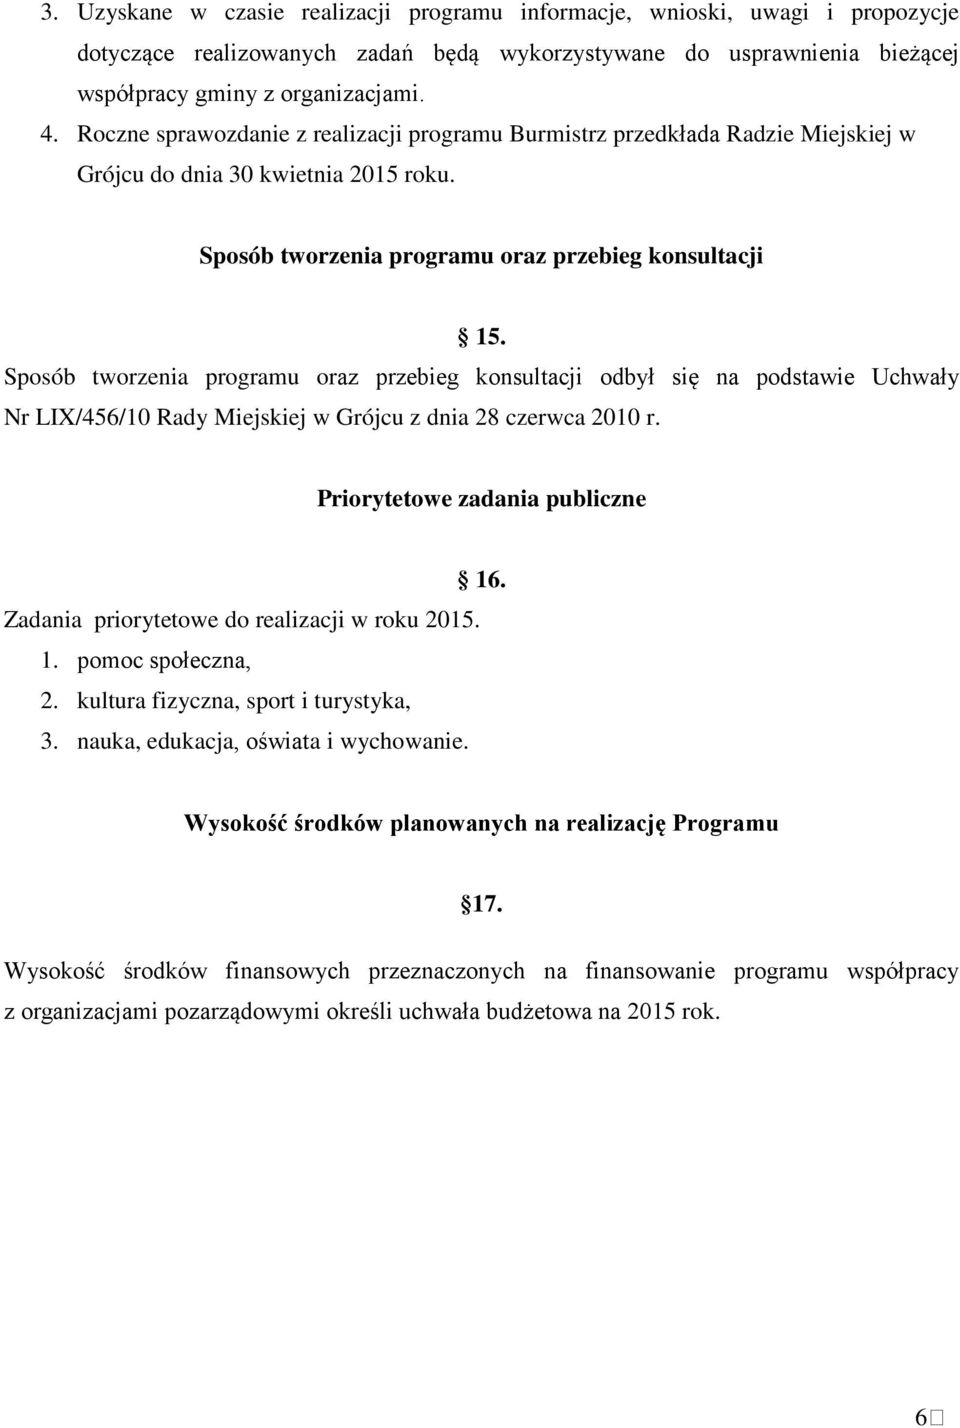 Sposób tworzenia programu oraz przebieg konsultacji odbył się na podstawie Uchwały Nr LIX/456/10 Rady Miejskiej w Grójcu z dnia 28 czerwca 2010 r. Priorytetowe zadania publiczne 16.